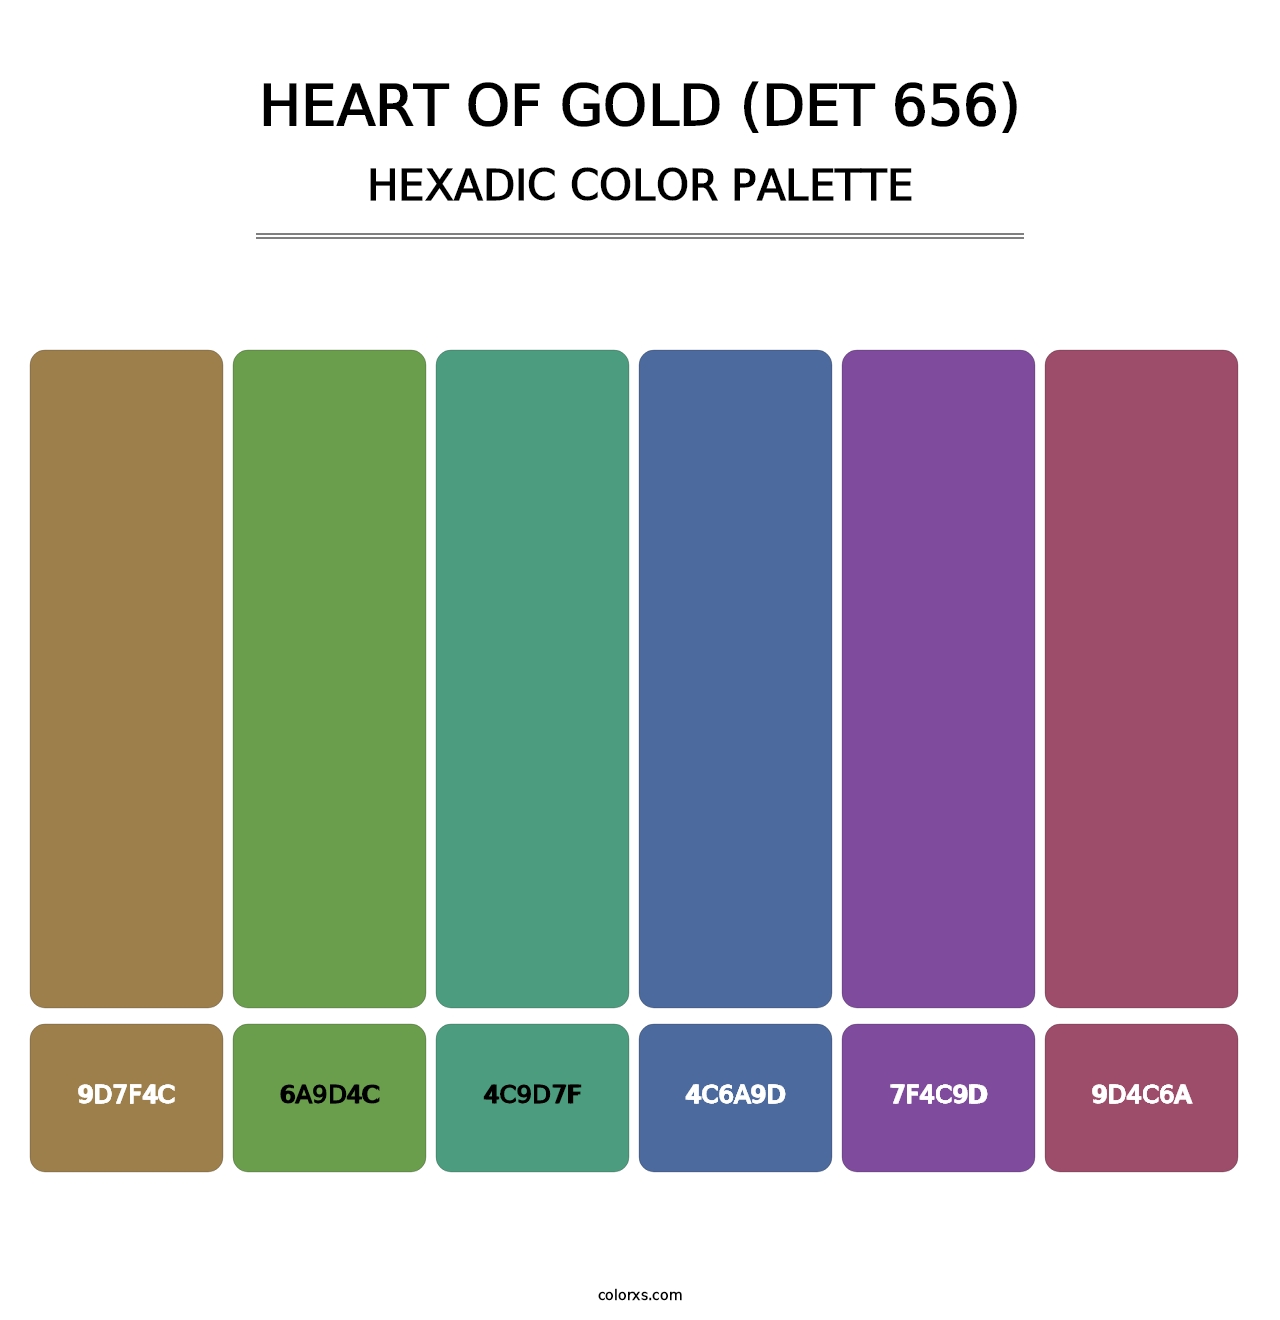 Heart of Gold (DET 656) - Hexadic Color Palette